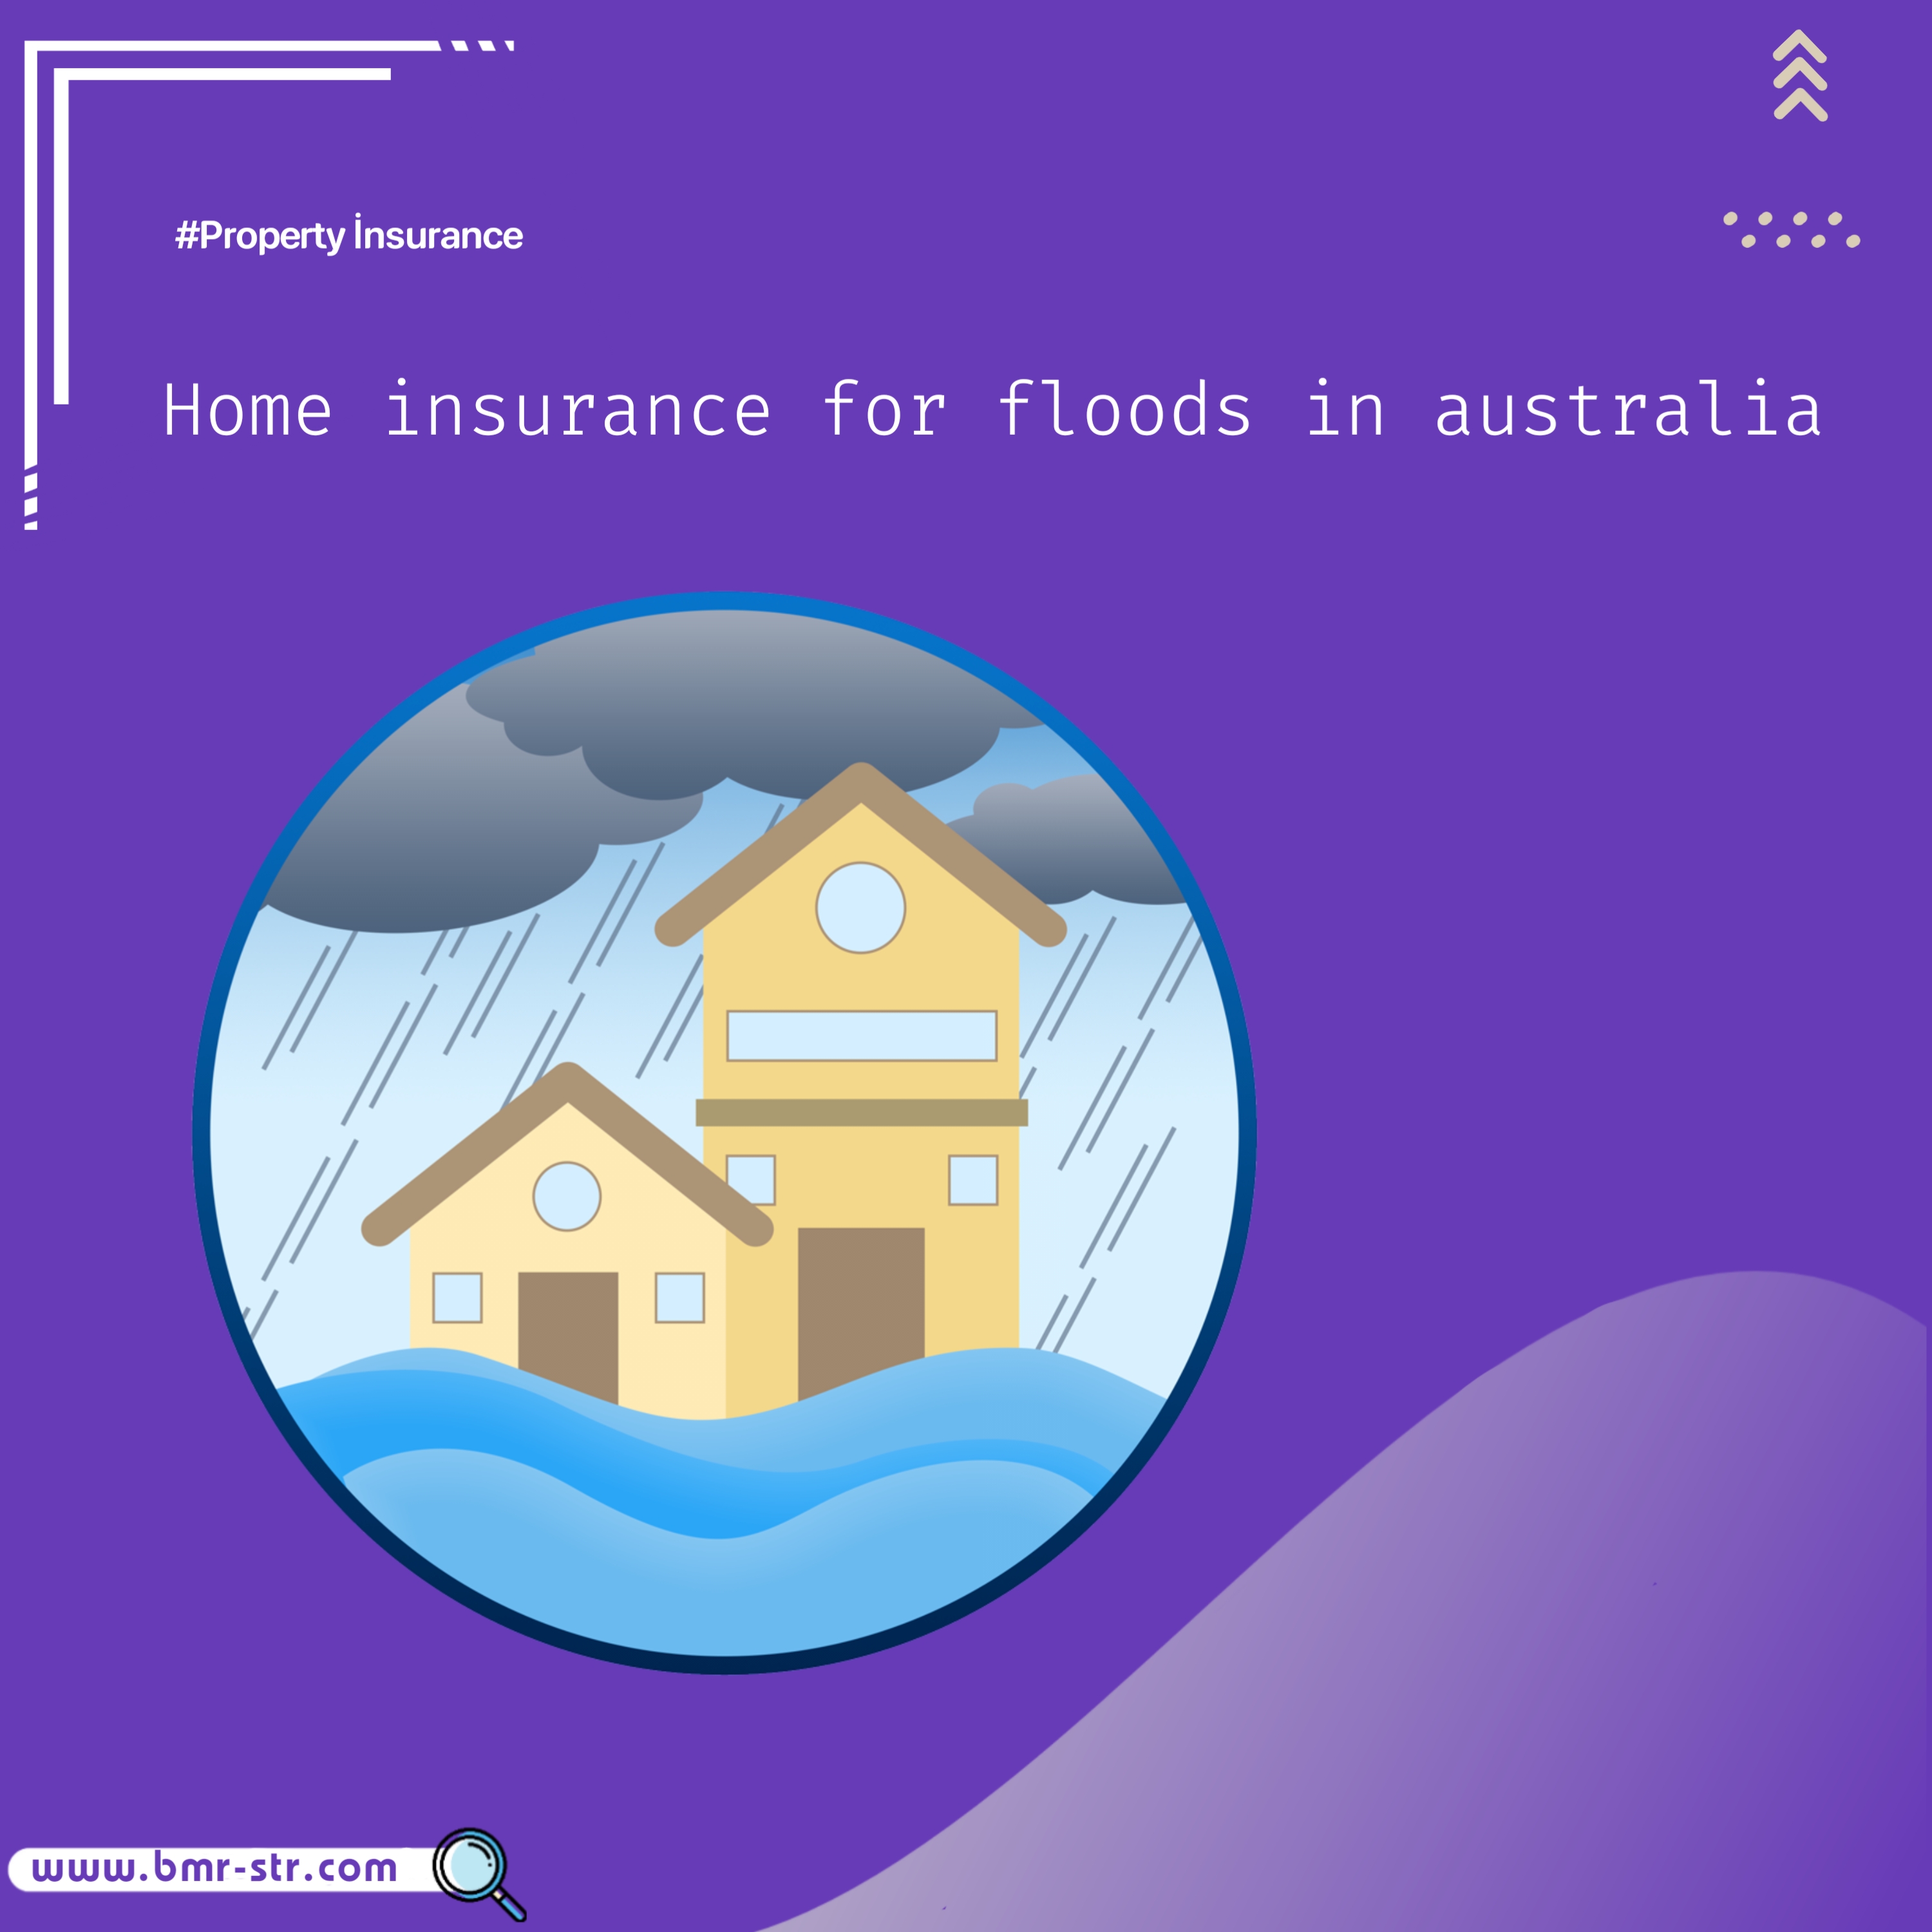 Home insurance for floods in australia